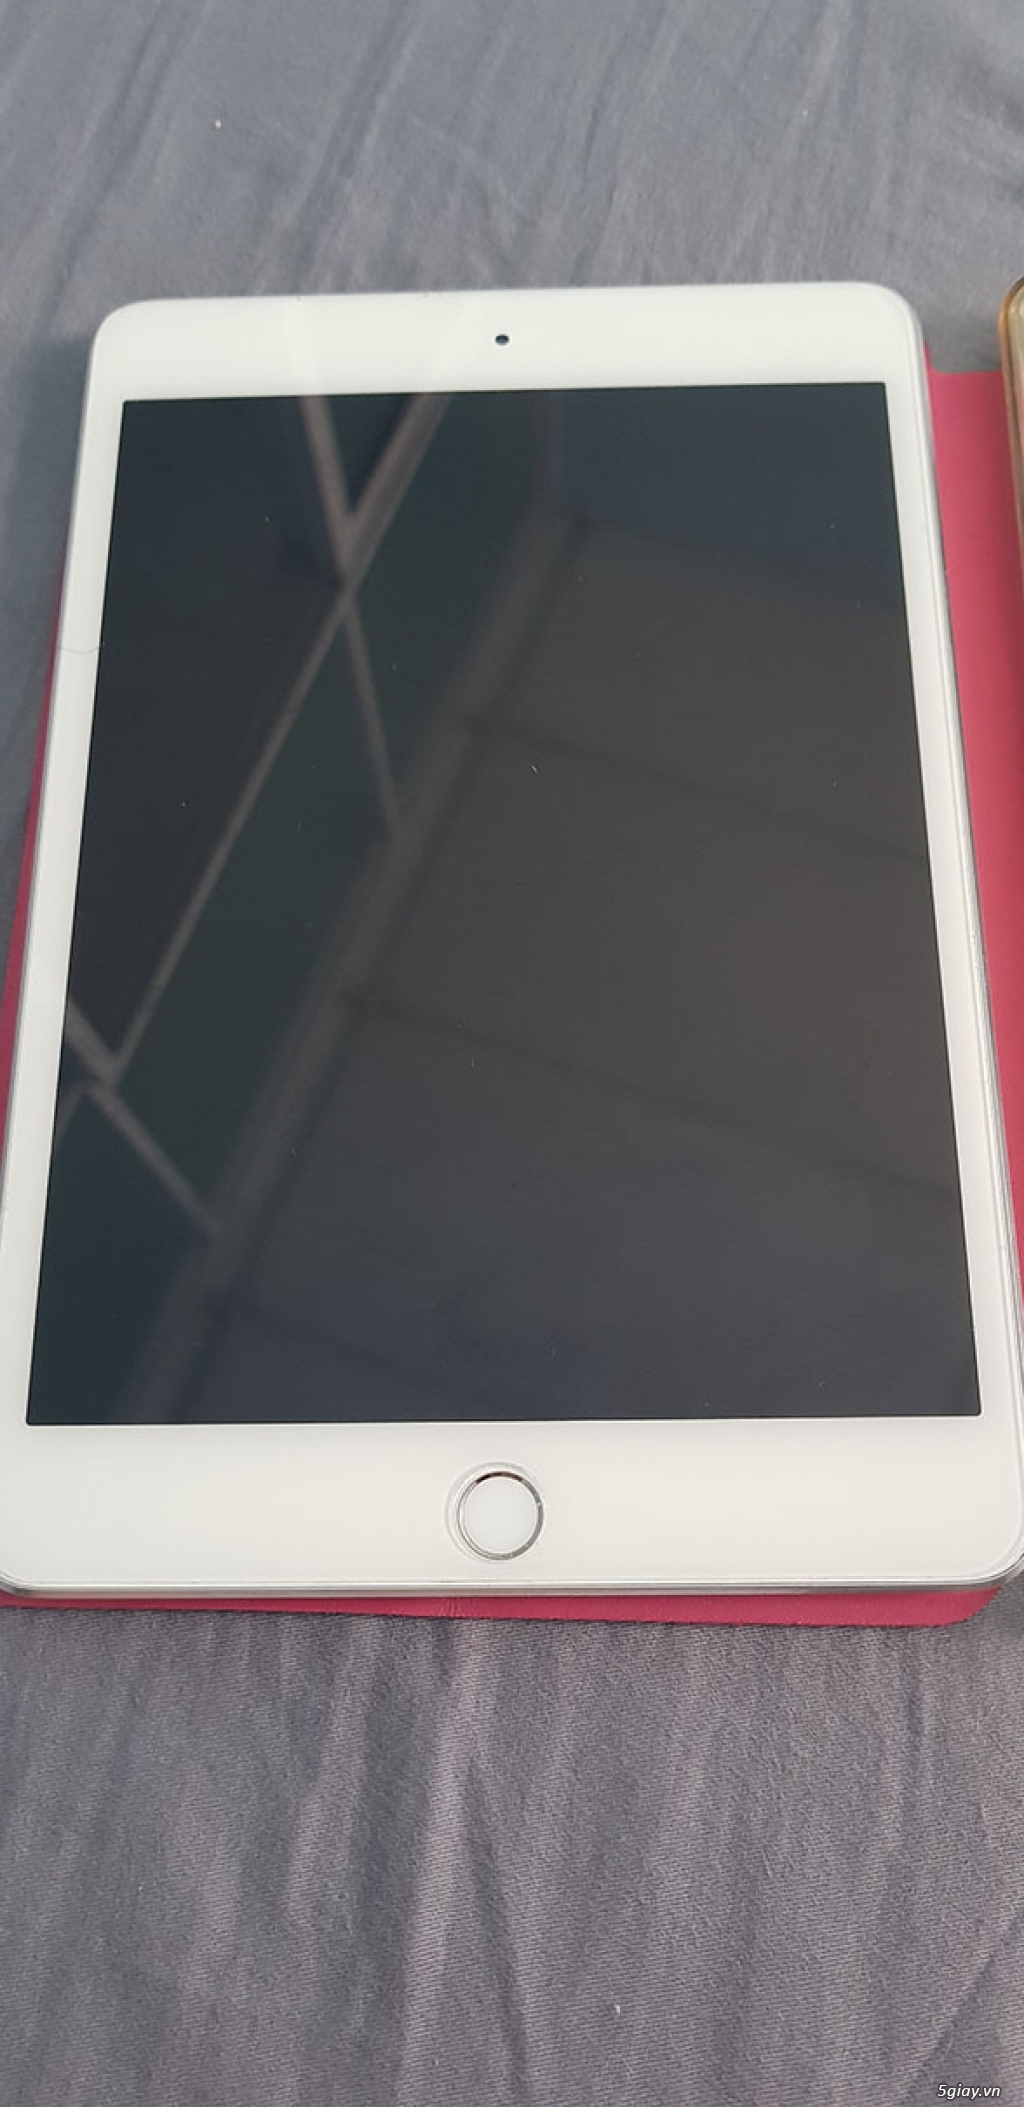 iPad Mini 4 Wifi 16GB Silver - 4